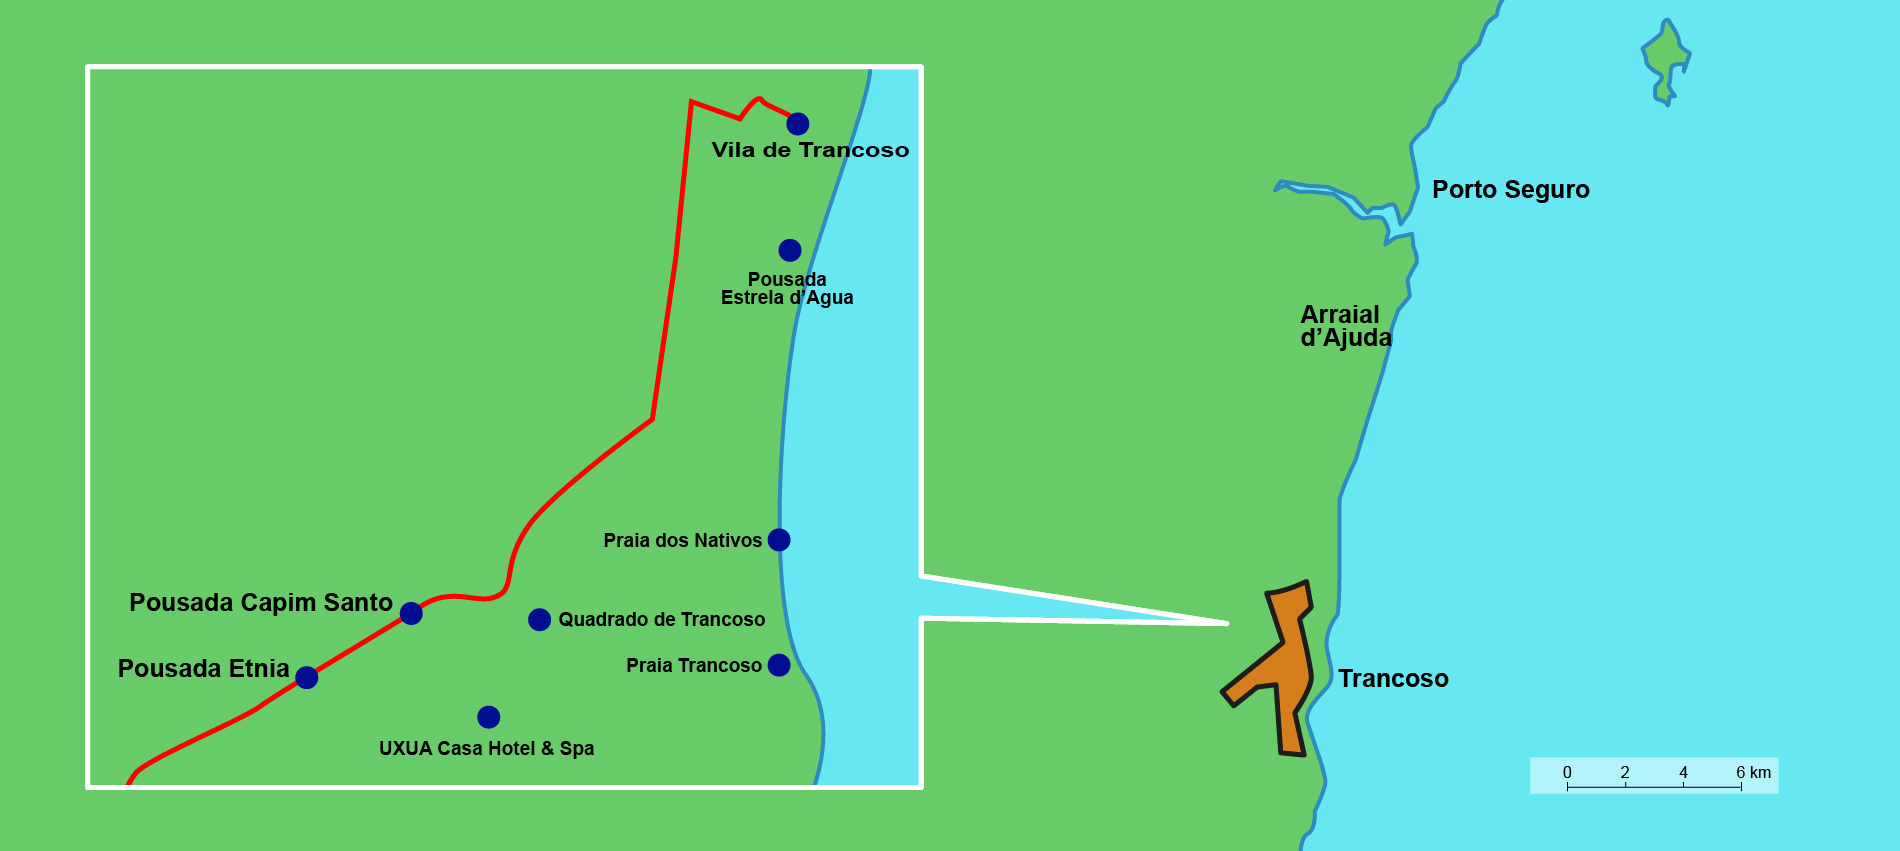 La carte de la région de Trancoso.